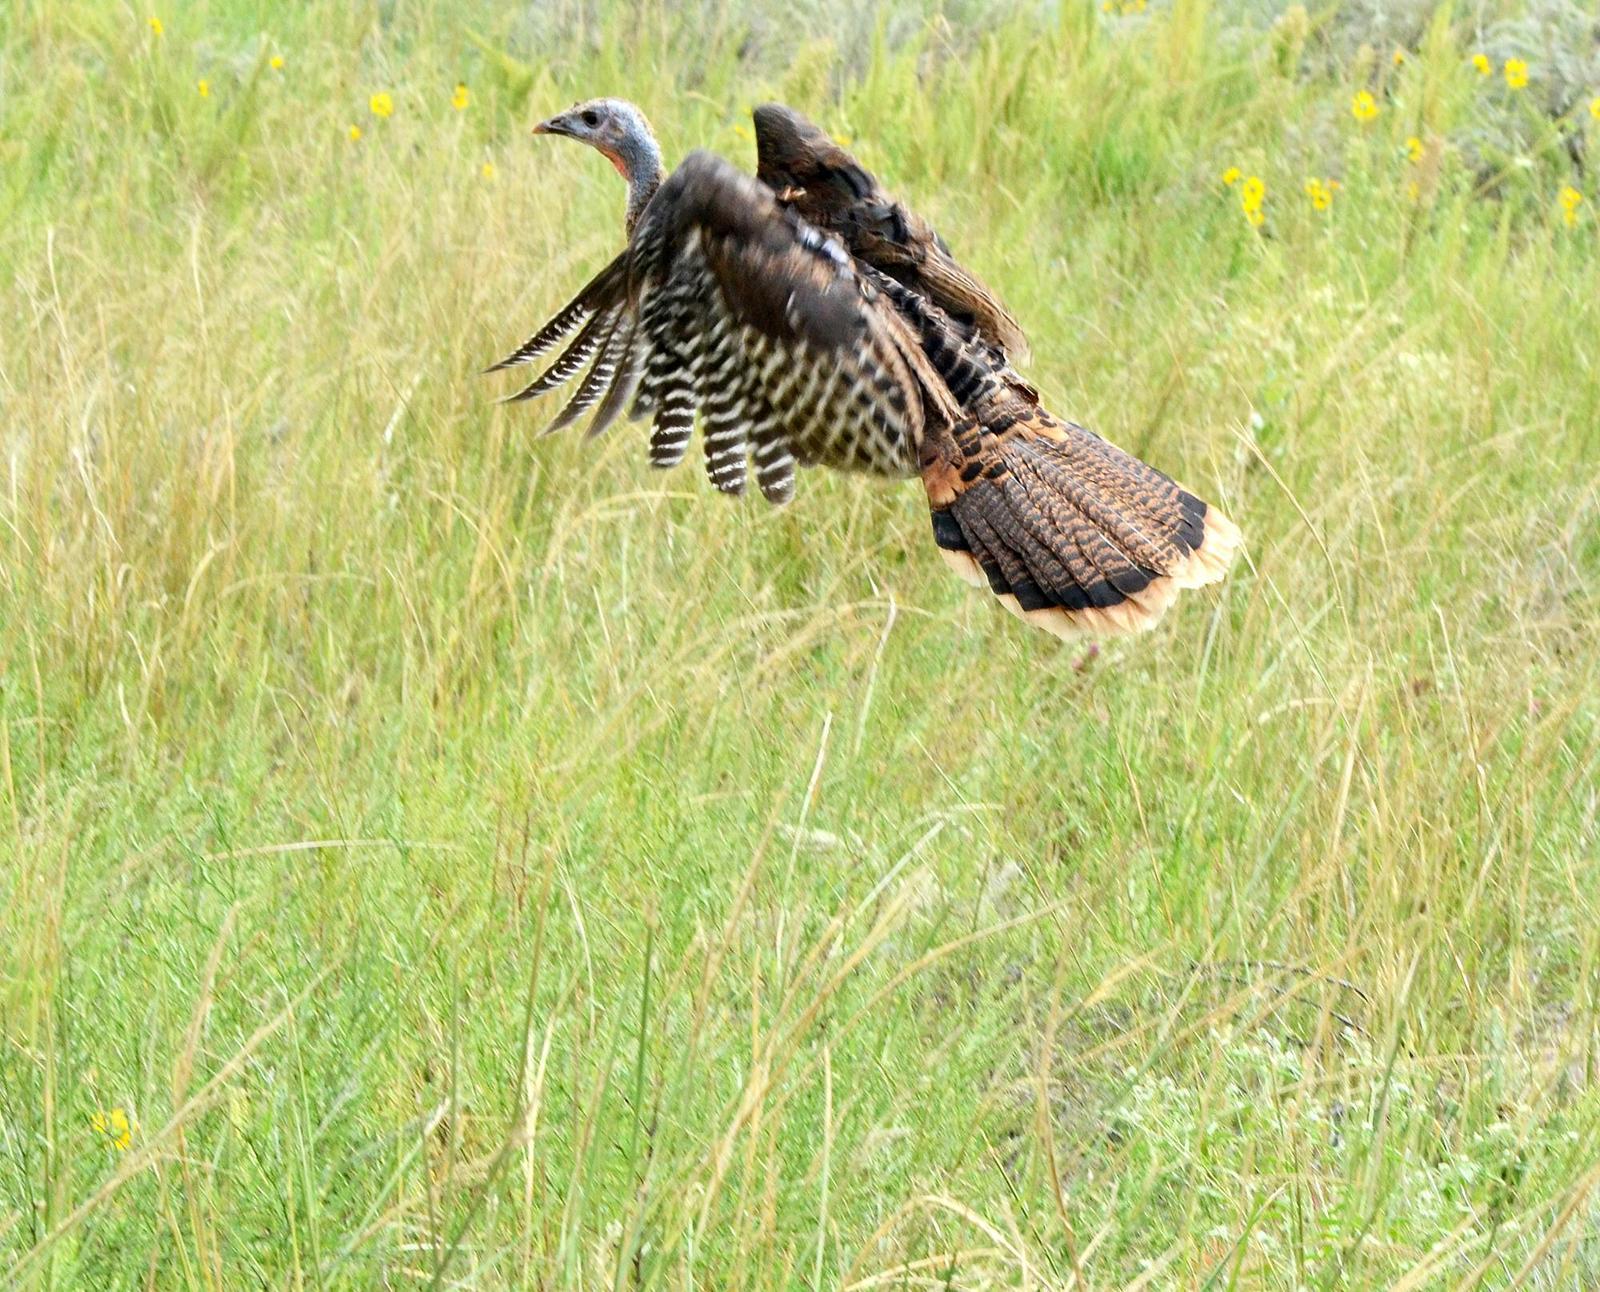 Wild Turkey Photo by Steven Mlodinow